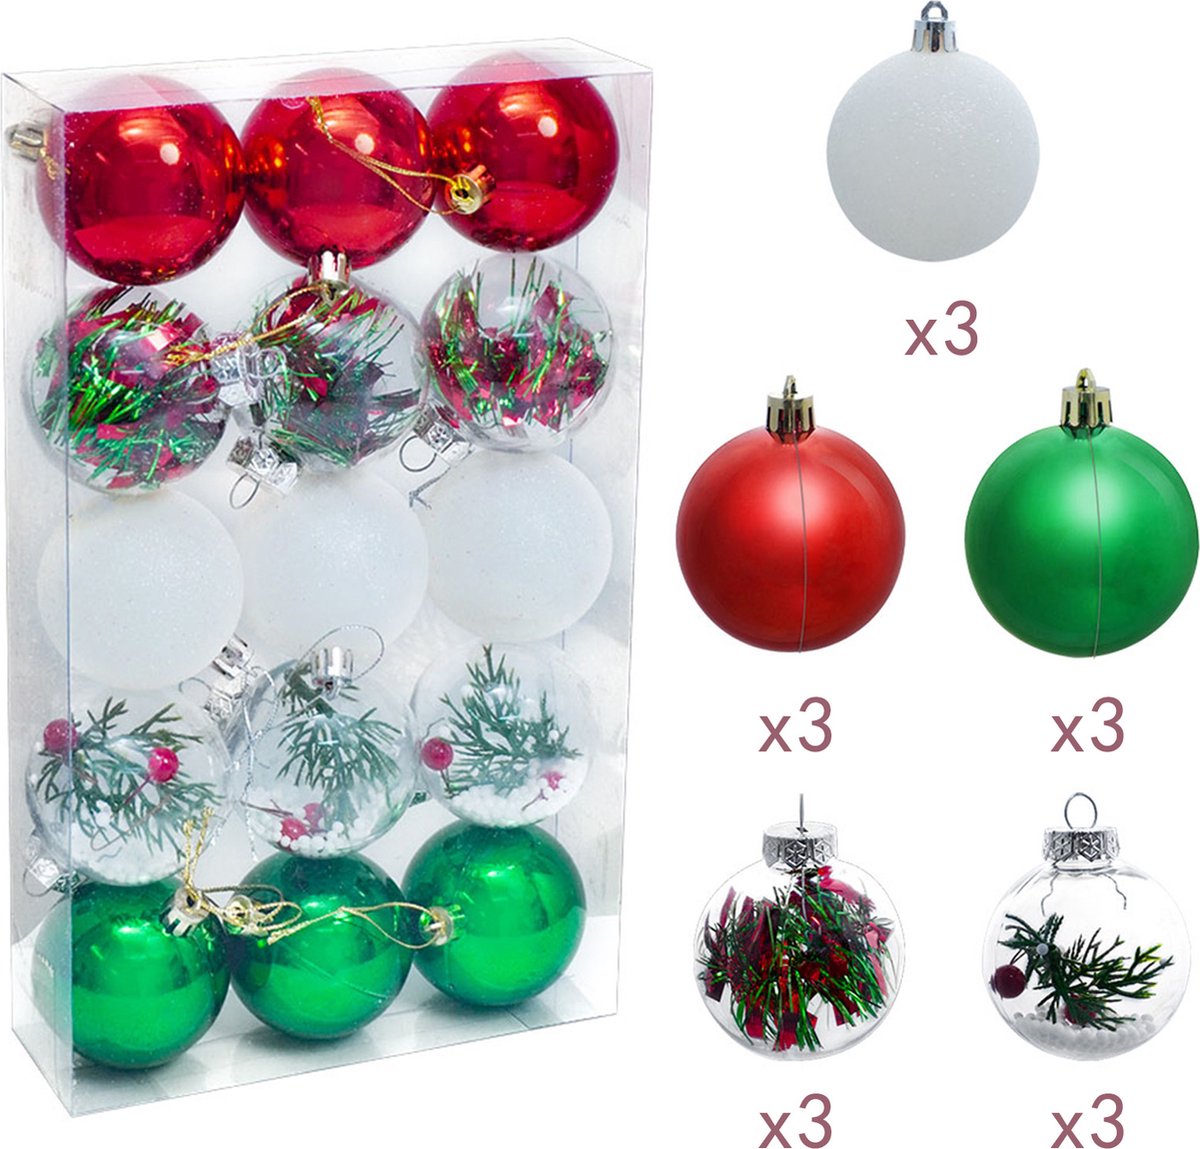 Uten - Kerstballen Plastic - kerstboom versiering - Christmas Gifts - kerstballen set - 15 stuks - kerstboom ballen - Ø6cm - Roze x 3 - wit x 3 - Groen x 3 - transparant x 6